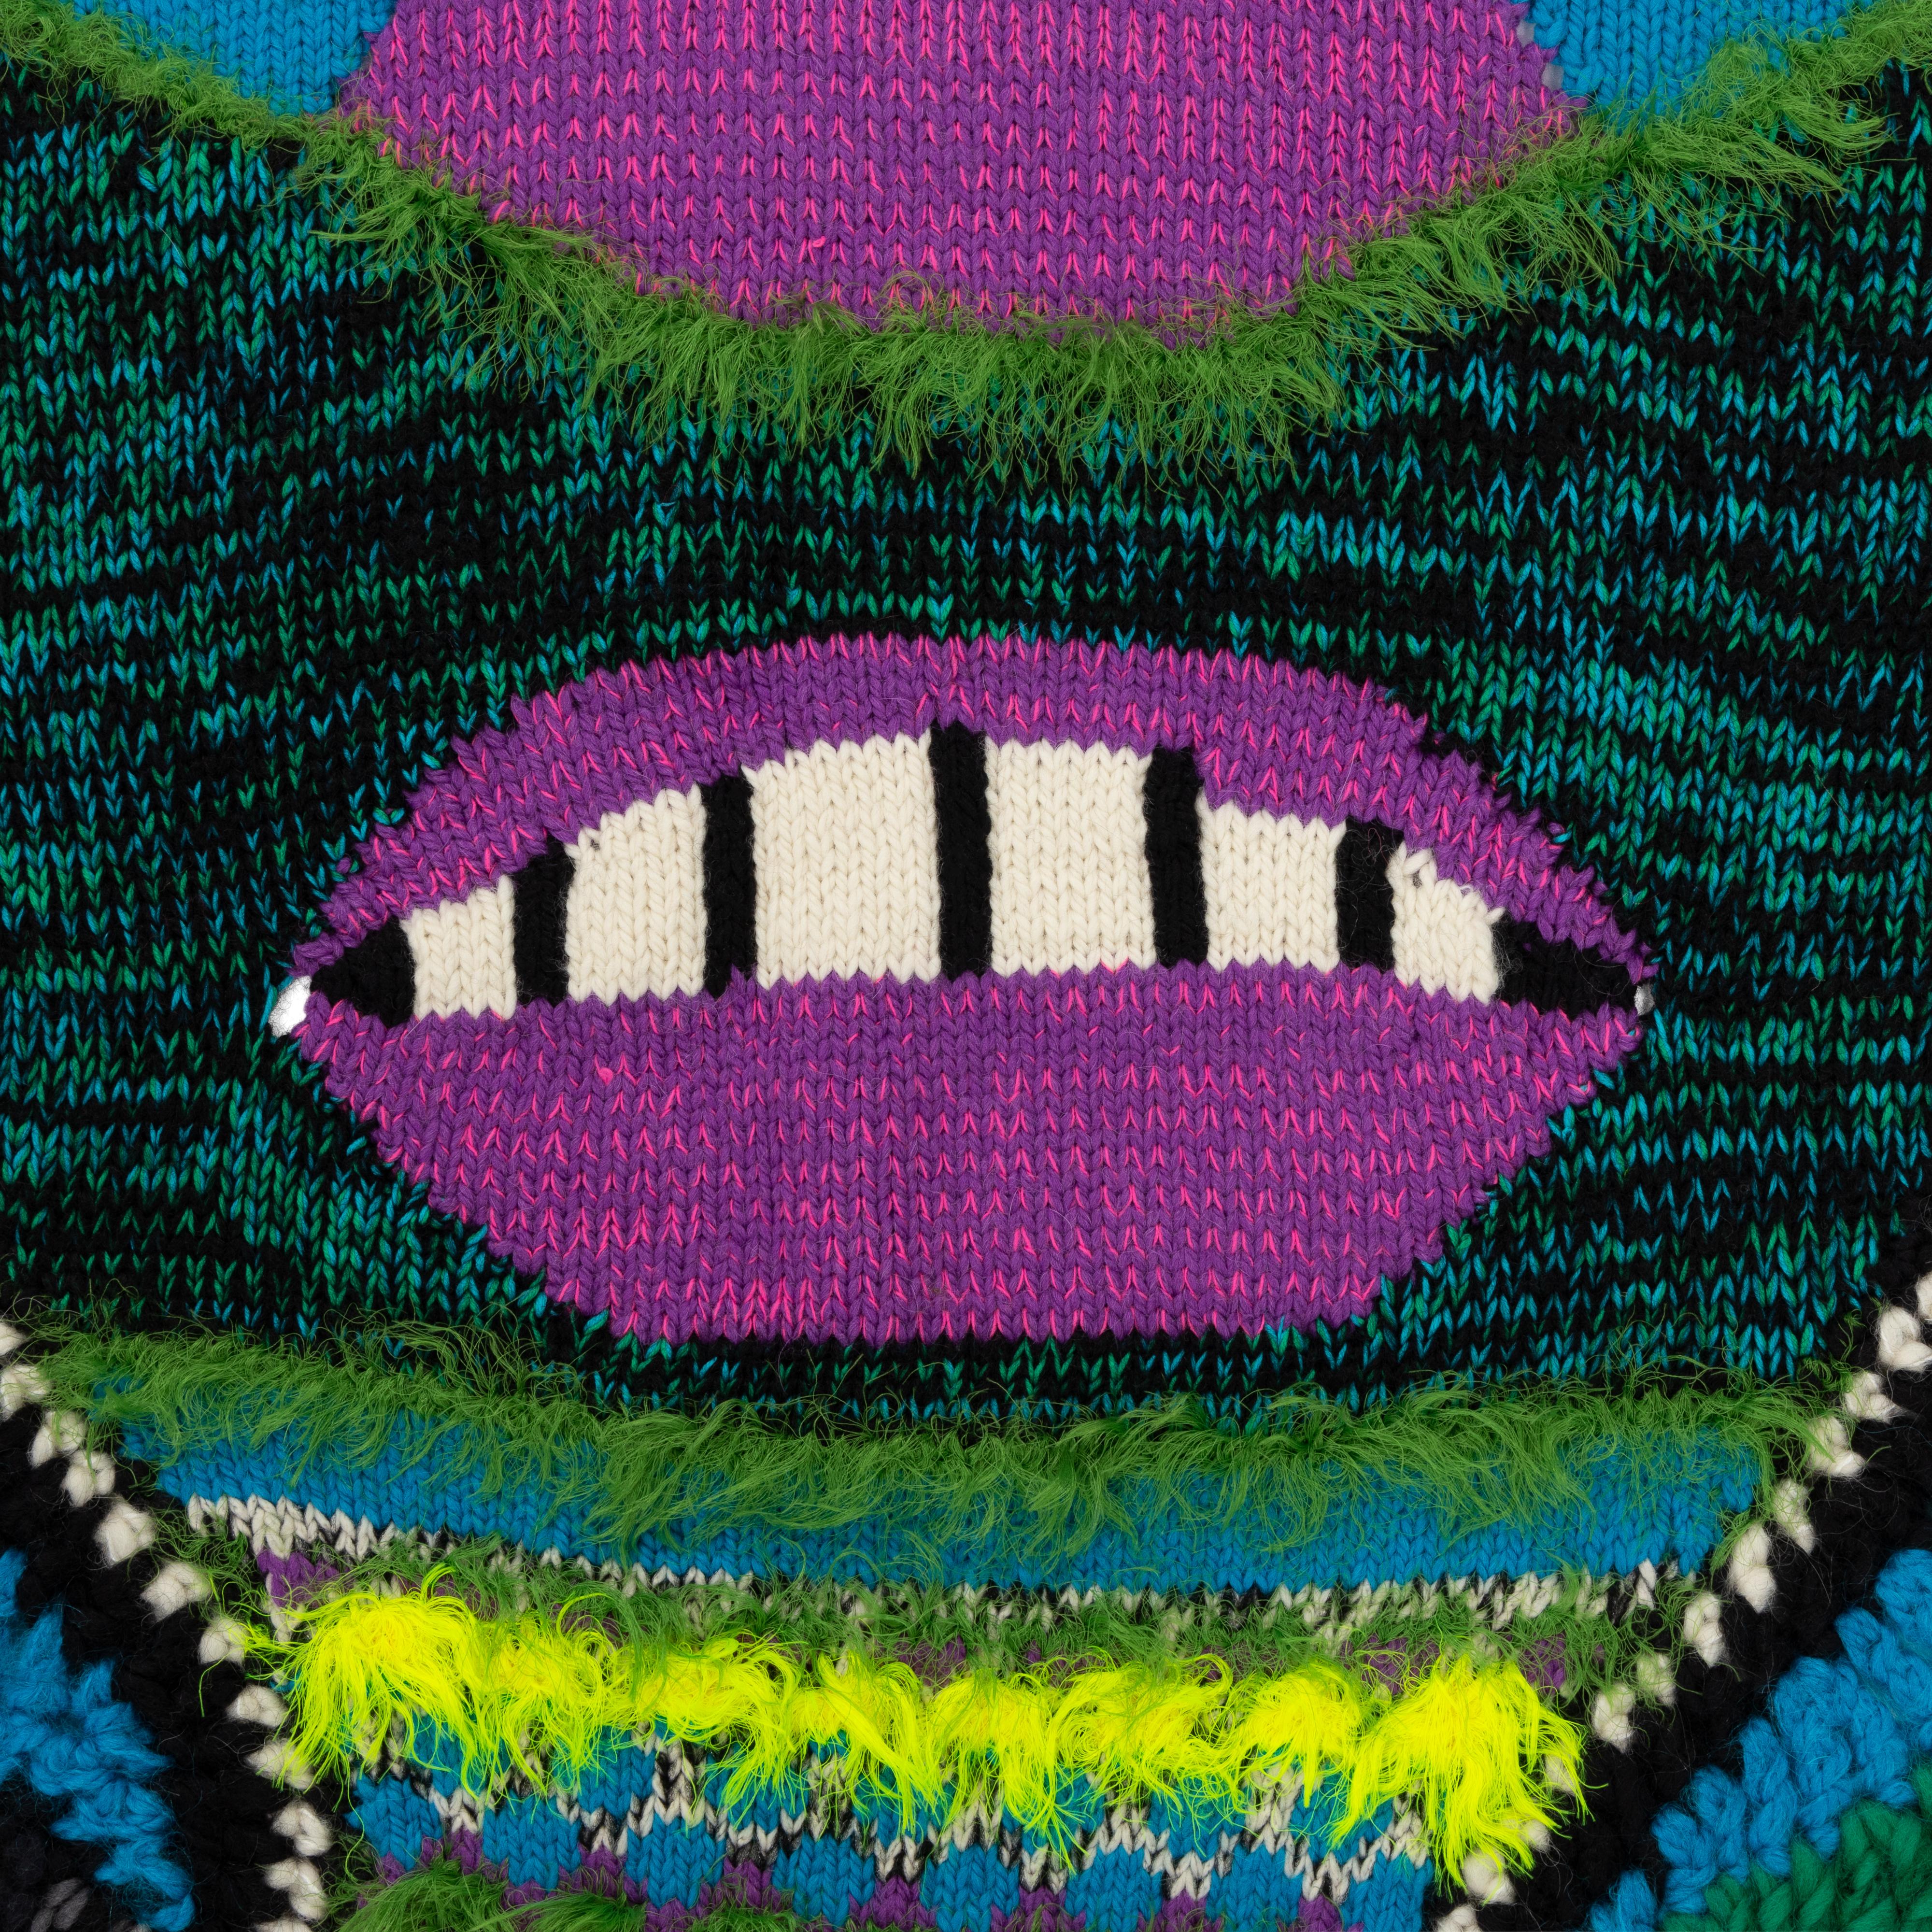 Couverture masque au crochet et au tricot faite à la main, inspirée des affiches psychédéliques. 
Art textile, artisanat, couverture d'art en tricot et crochet, tapisserie en tricot, couleurs vives, tenture murale, couverture d'appoint.
Les pièces